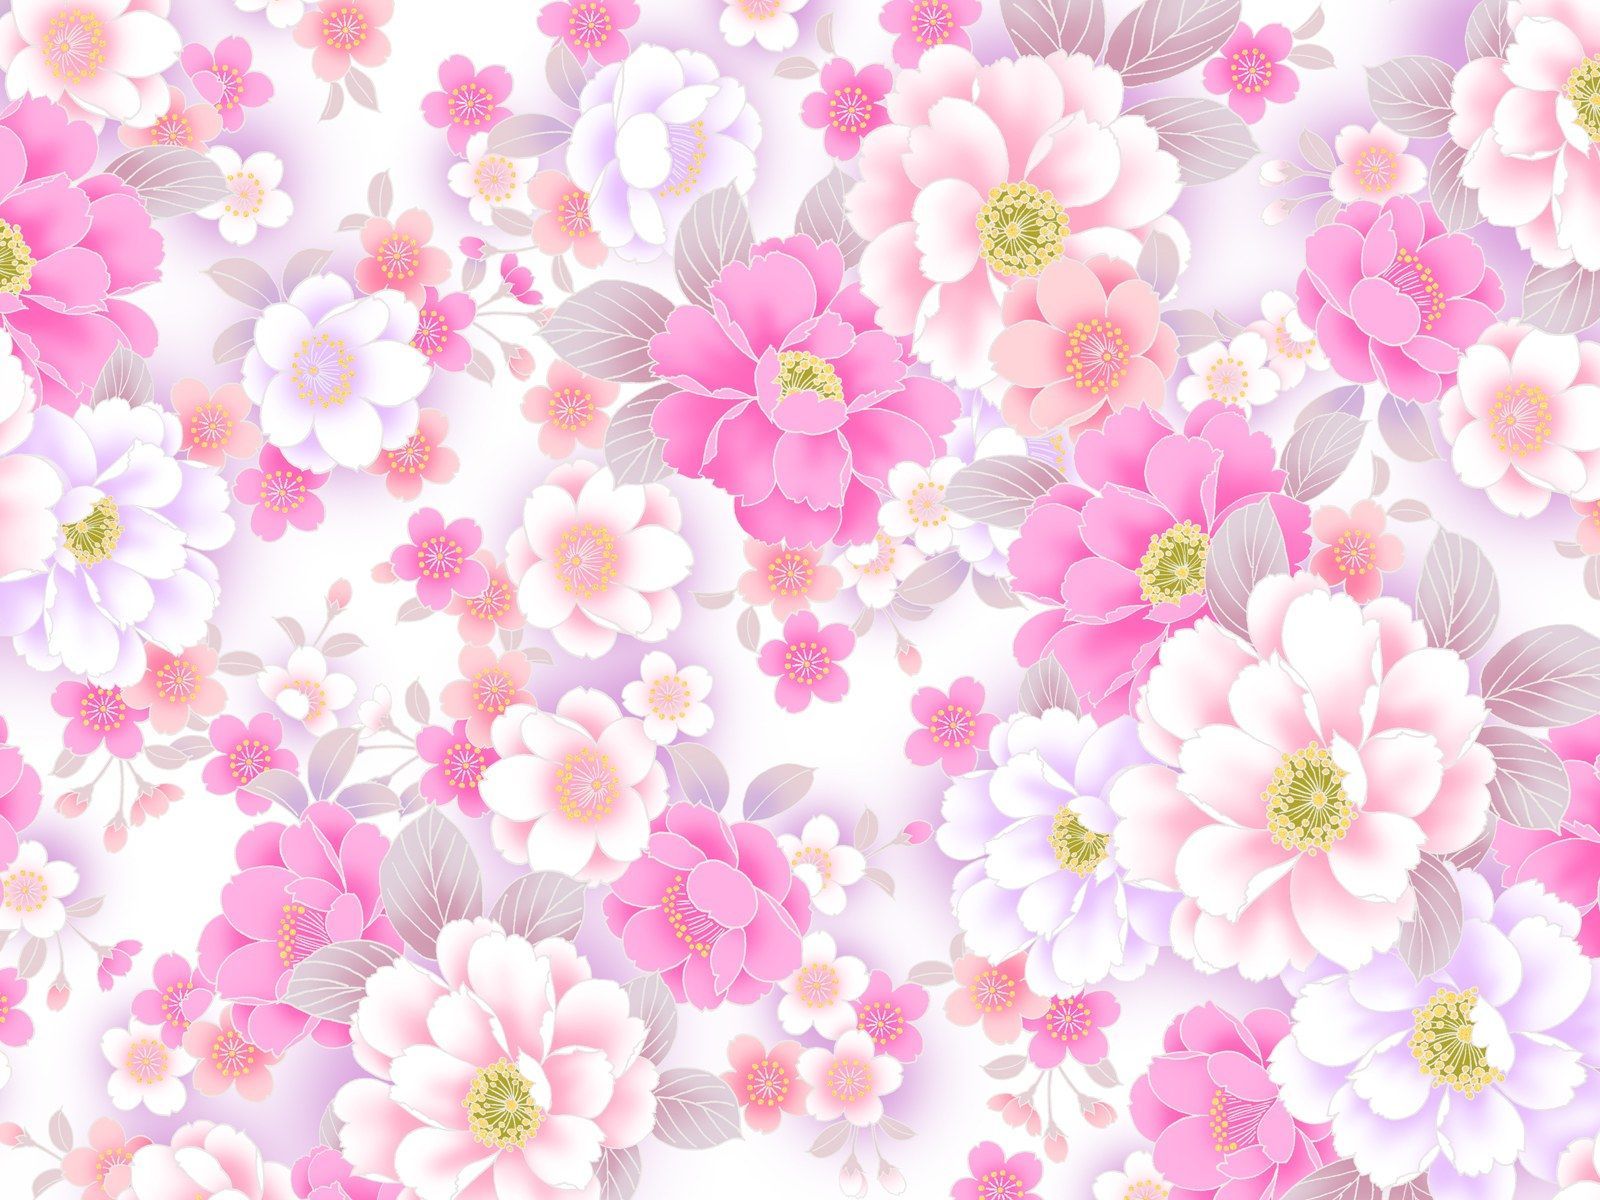 Cute Pink Flower Wallpaper Free .wallpaperaccess.com